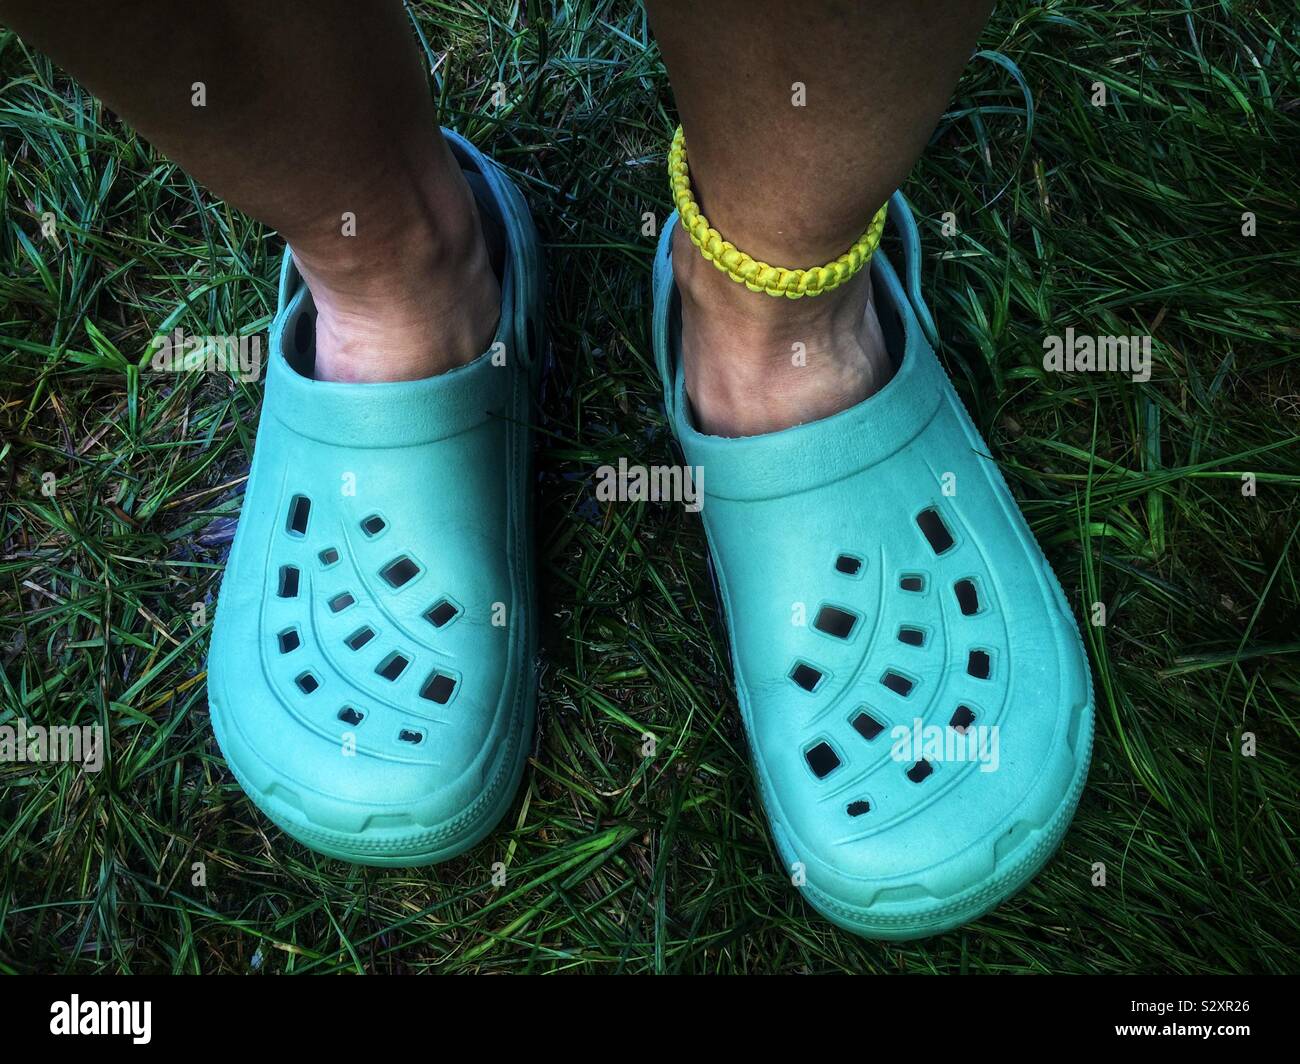 Par de pies de la persona usando crocs sandalias de plástico verde  Fotografía de stock - Alamy